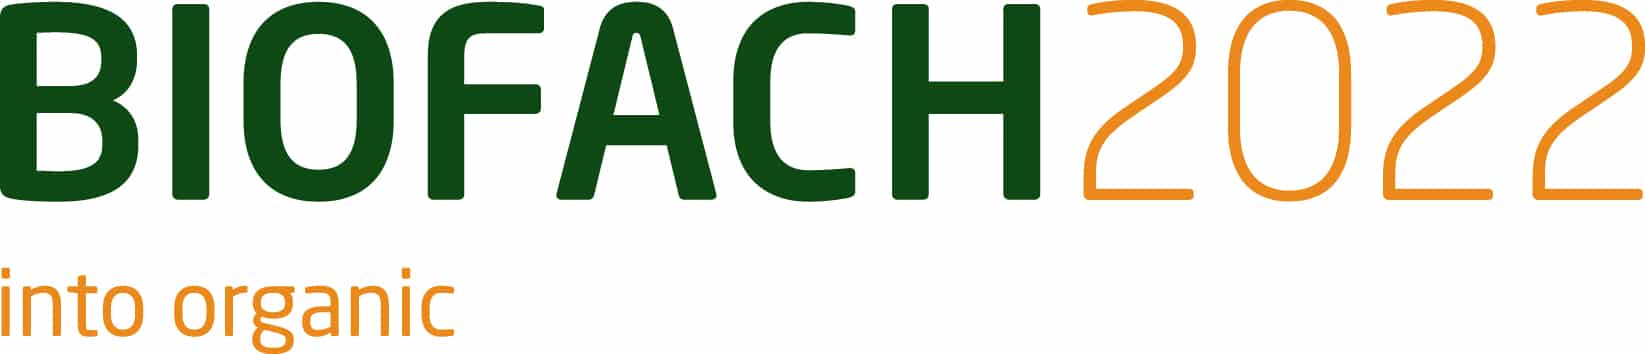 BIOFACH-2022-Logo-ohne-Datum-farbig-positiv-300dpi-RGB